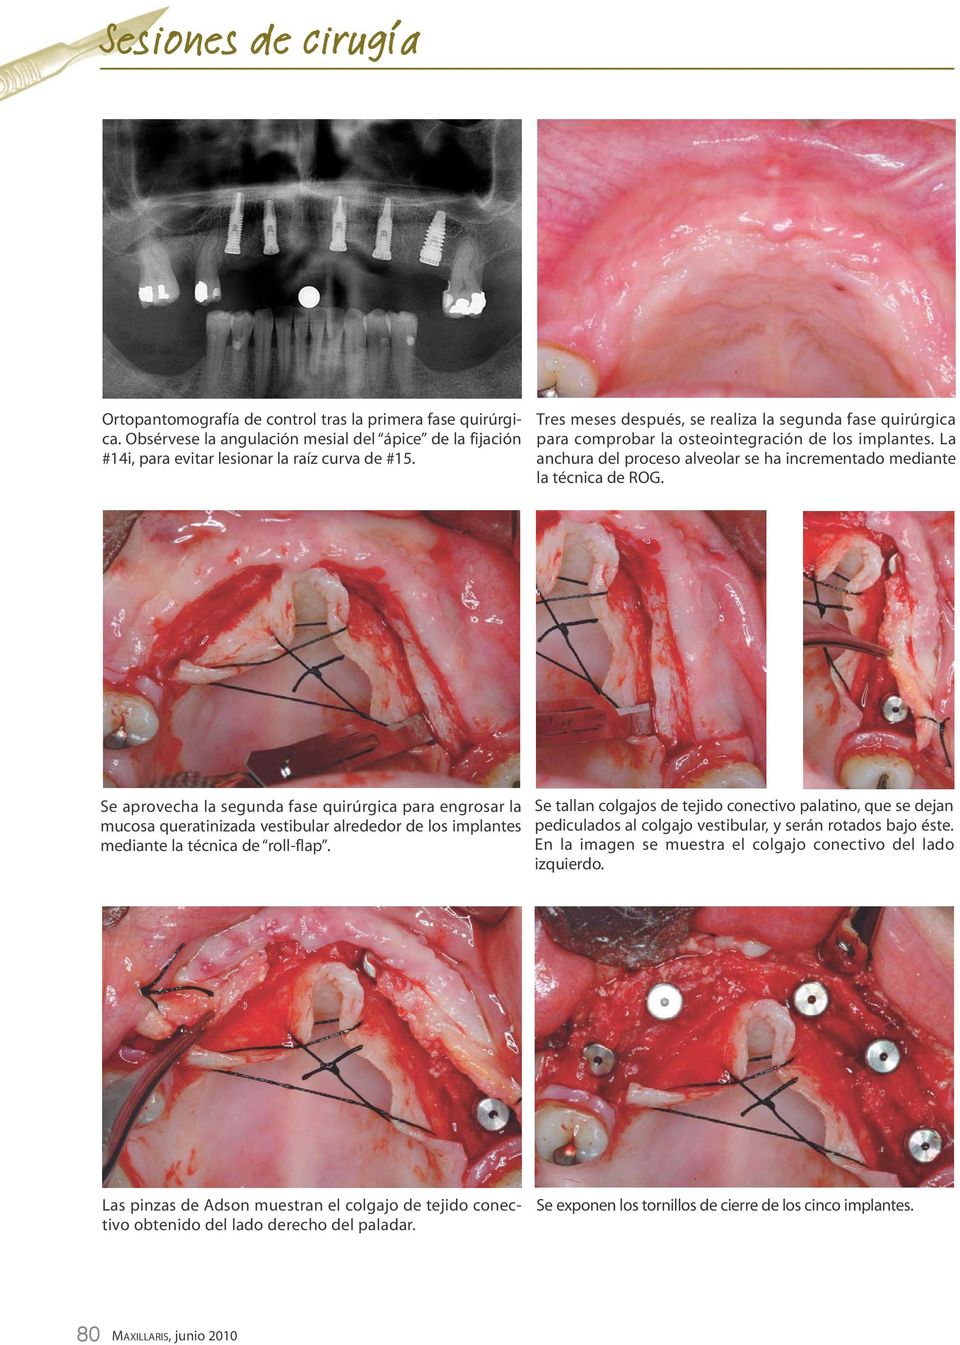 Se aprovecha la segunda fase quirúrgica para engrosar la mucosa queratinizada vestibular alrededor de los implantes mediante la técnica de roll-flap.